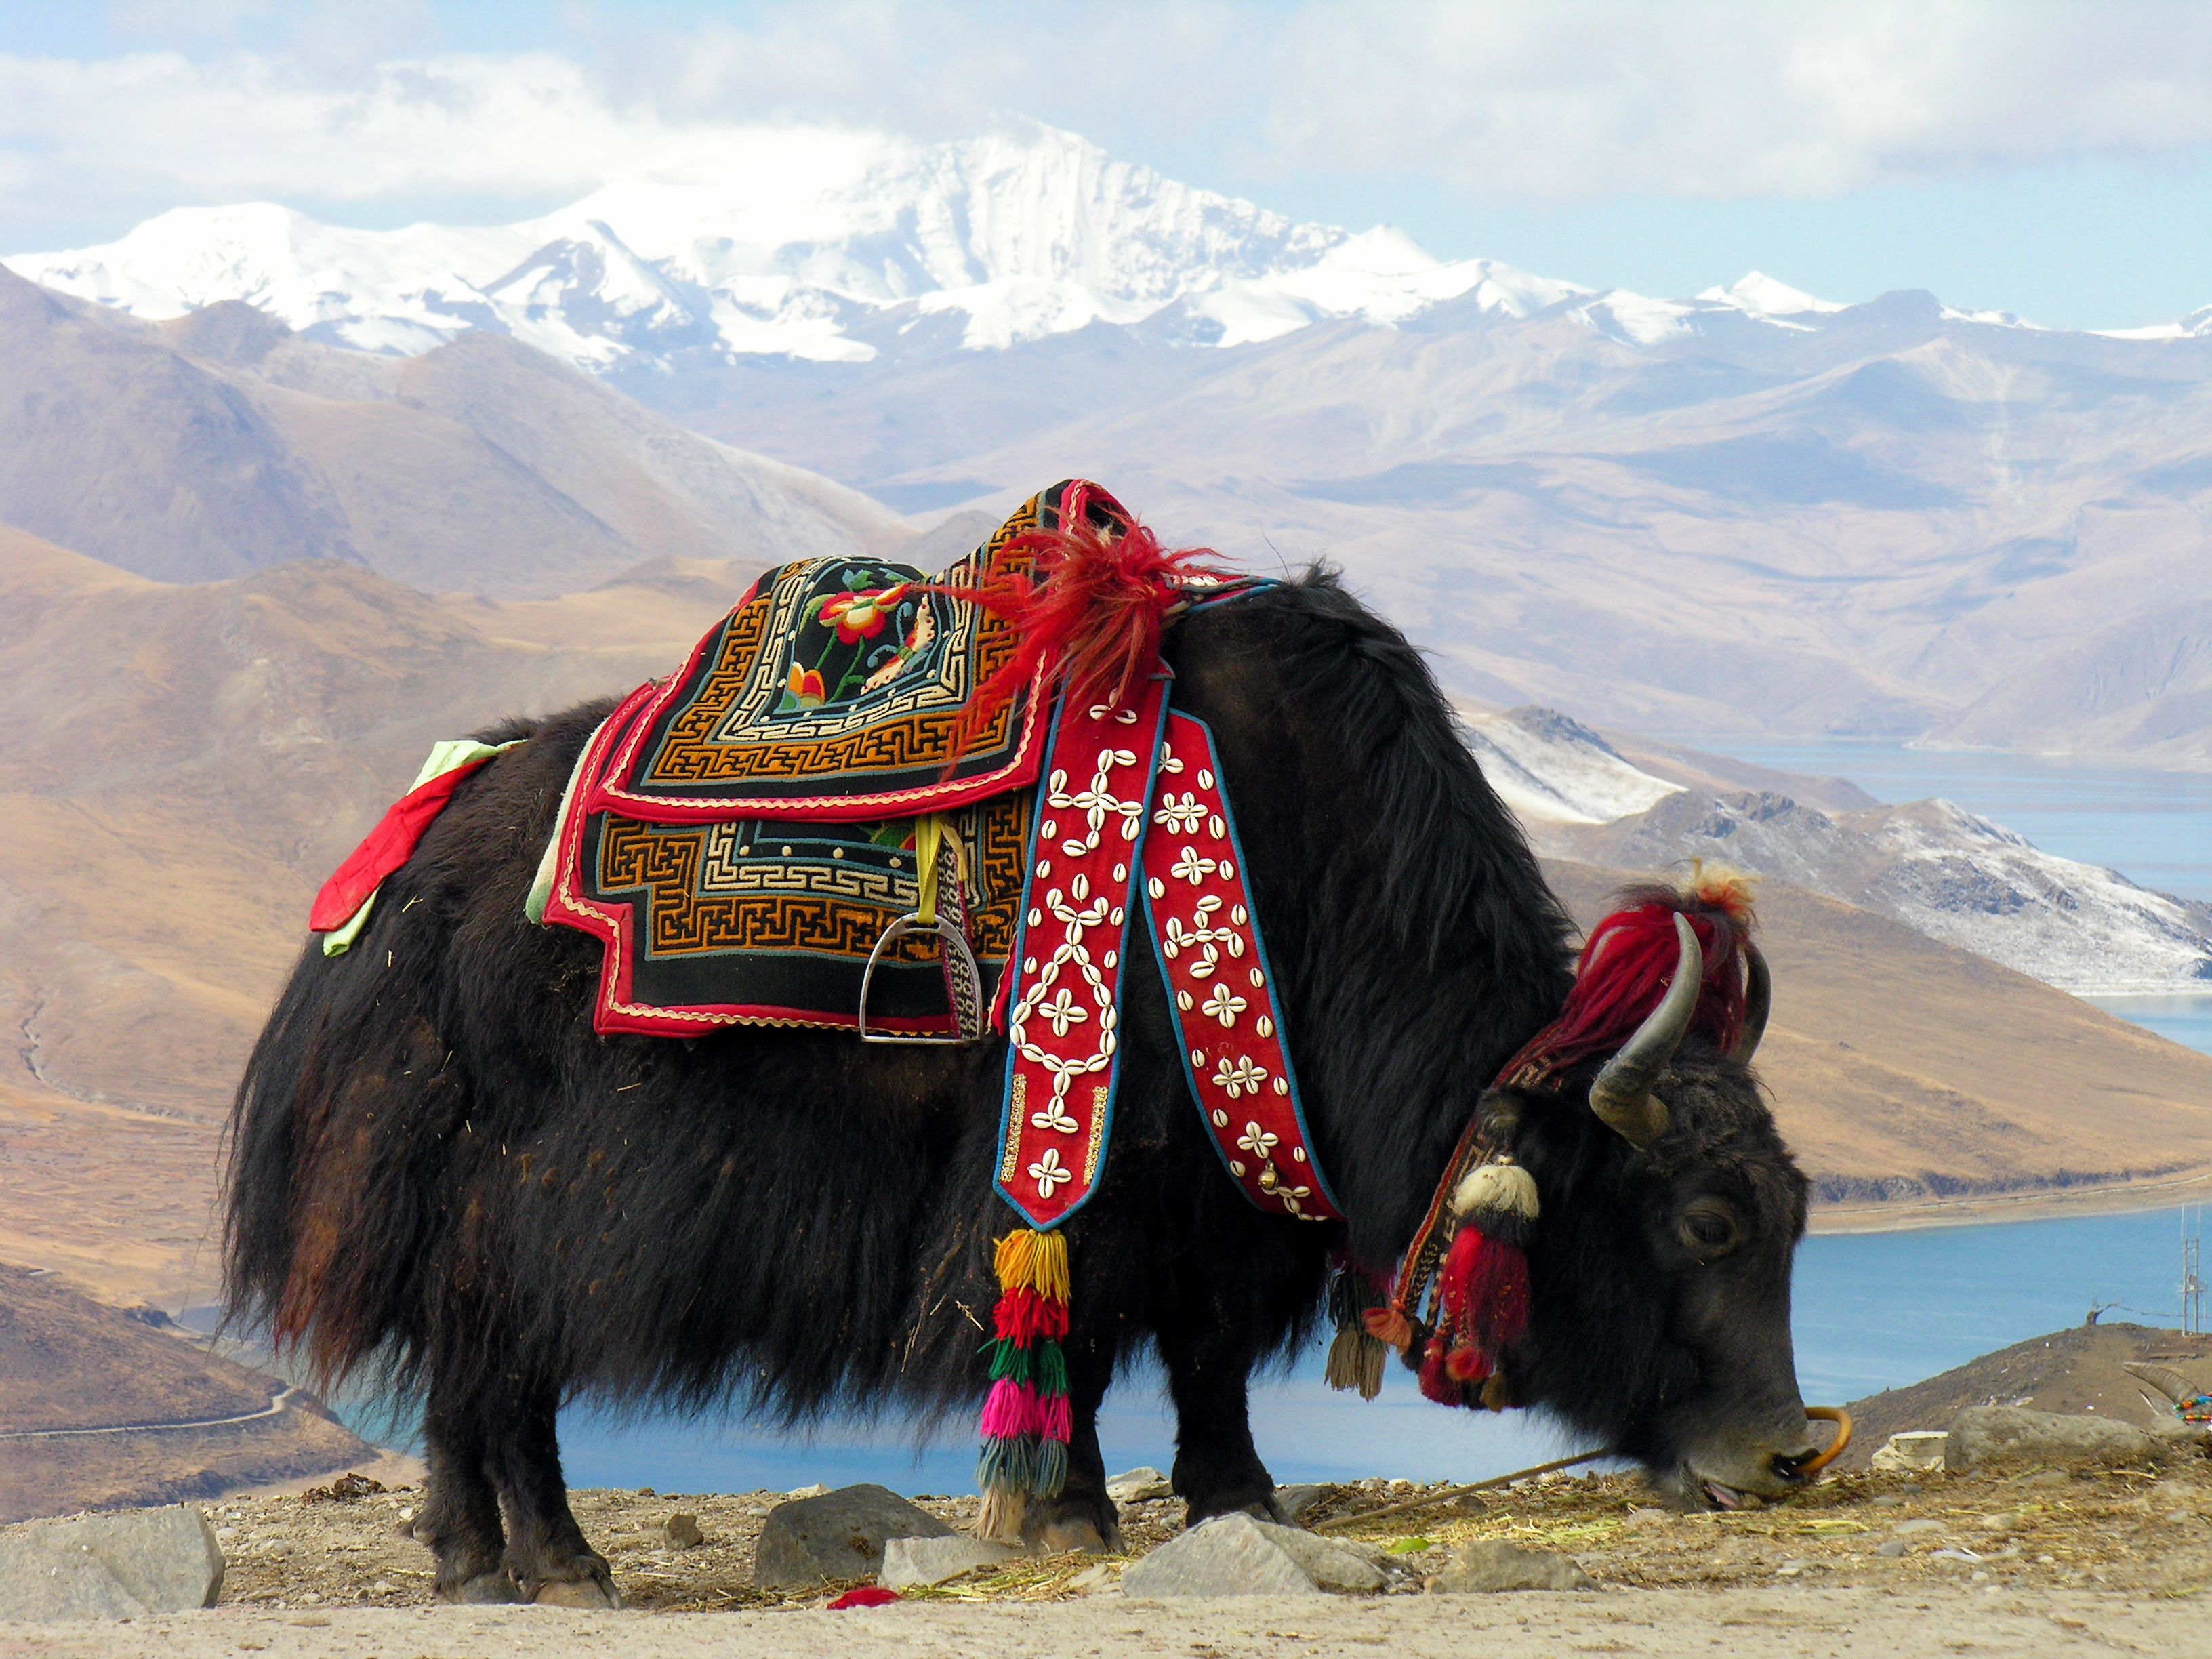 Yak tibetà, símbol de la regió